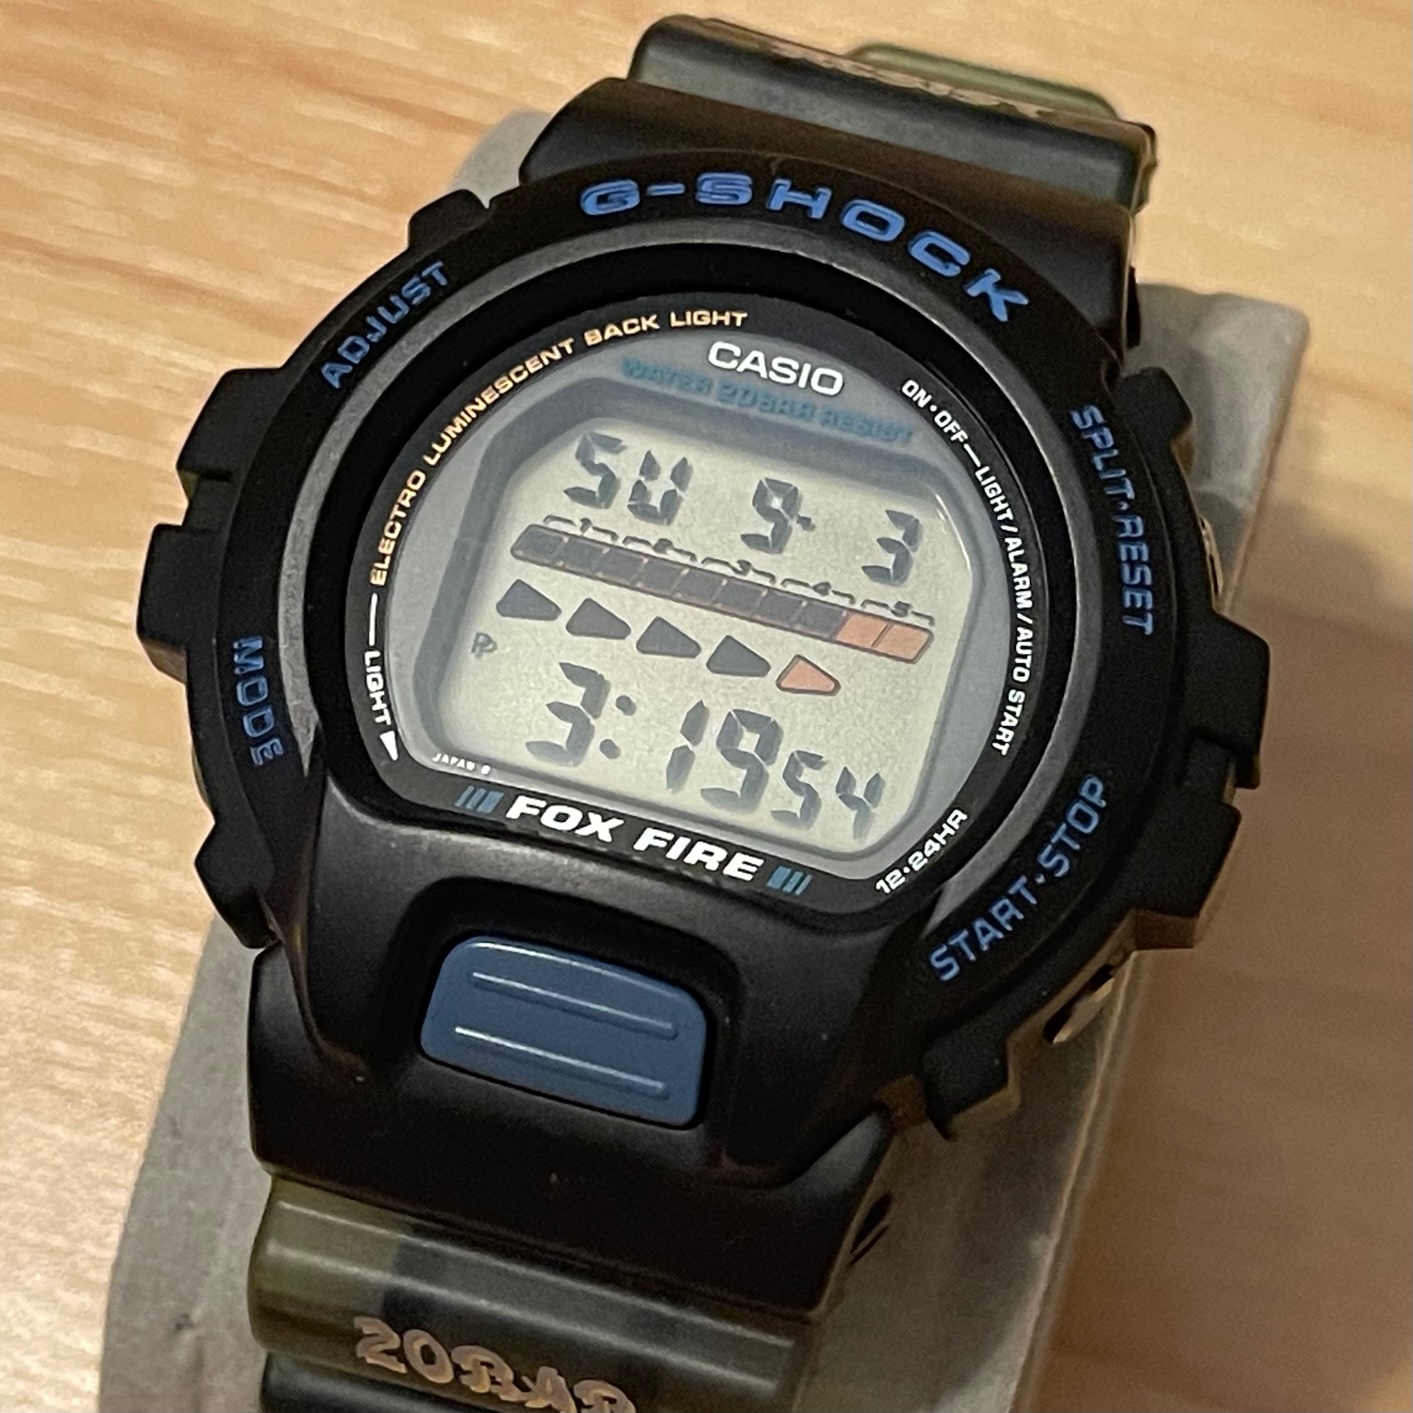 WTS] Casio G-Shock DW-6620-2 Scorpion Fox Fire Japan M 1199 Module